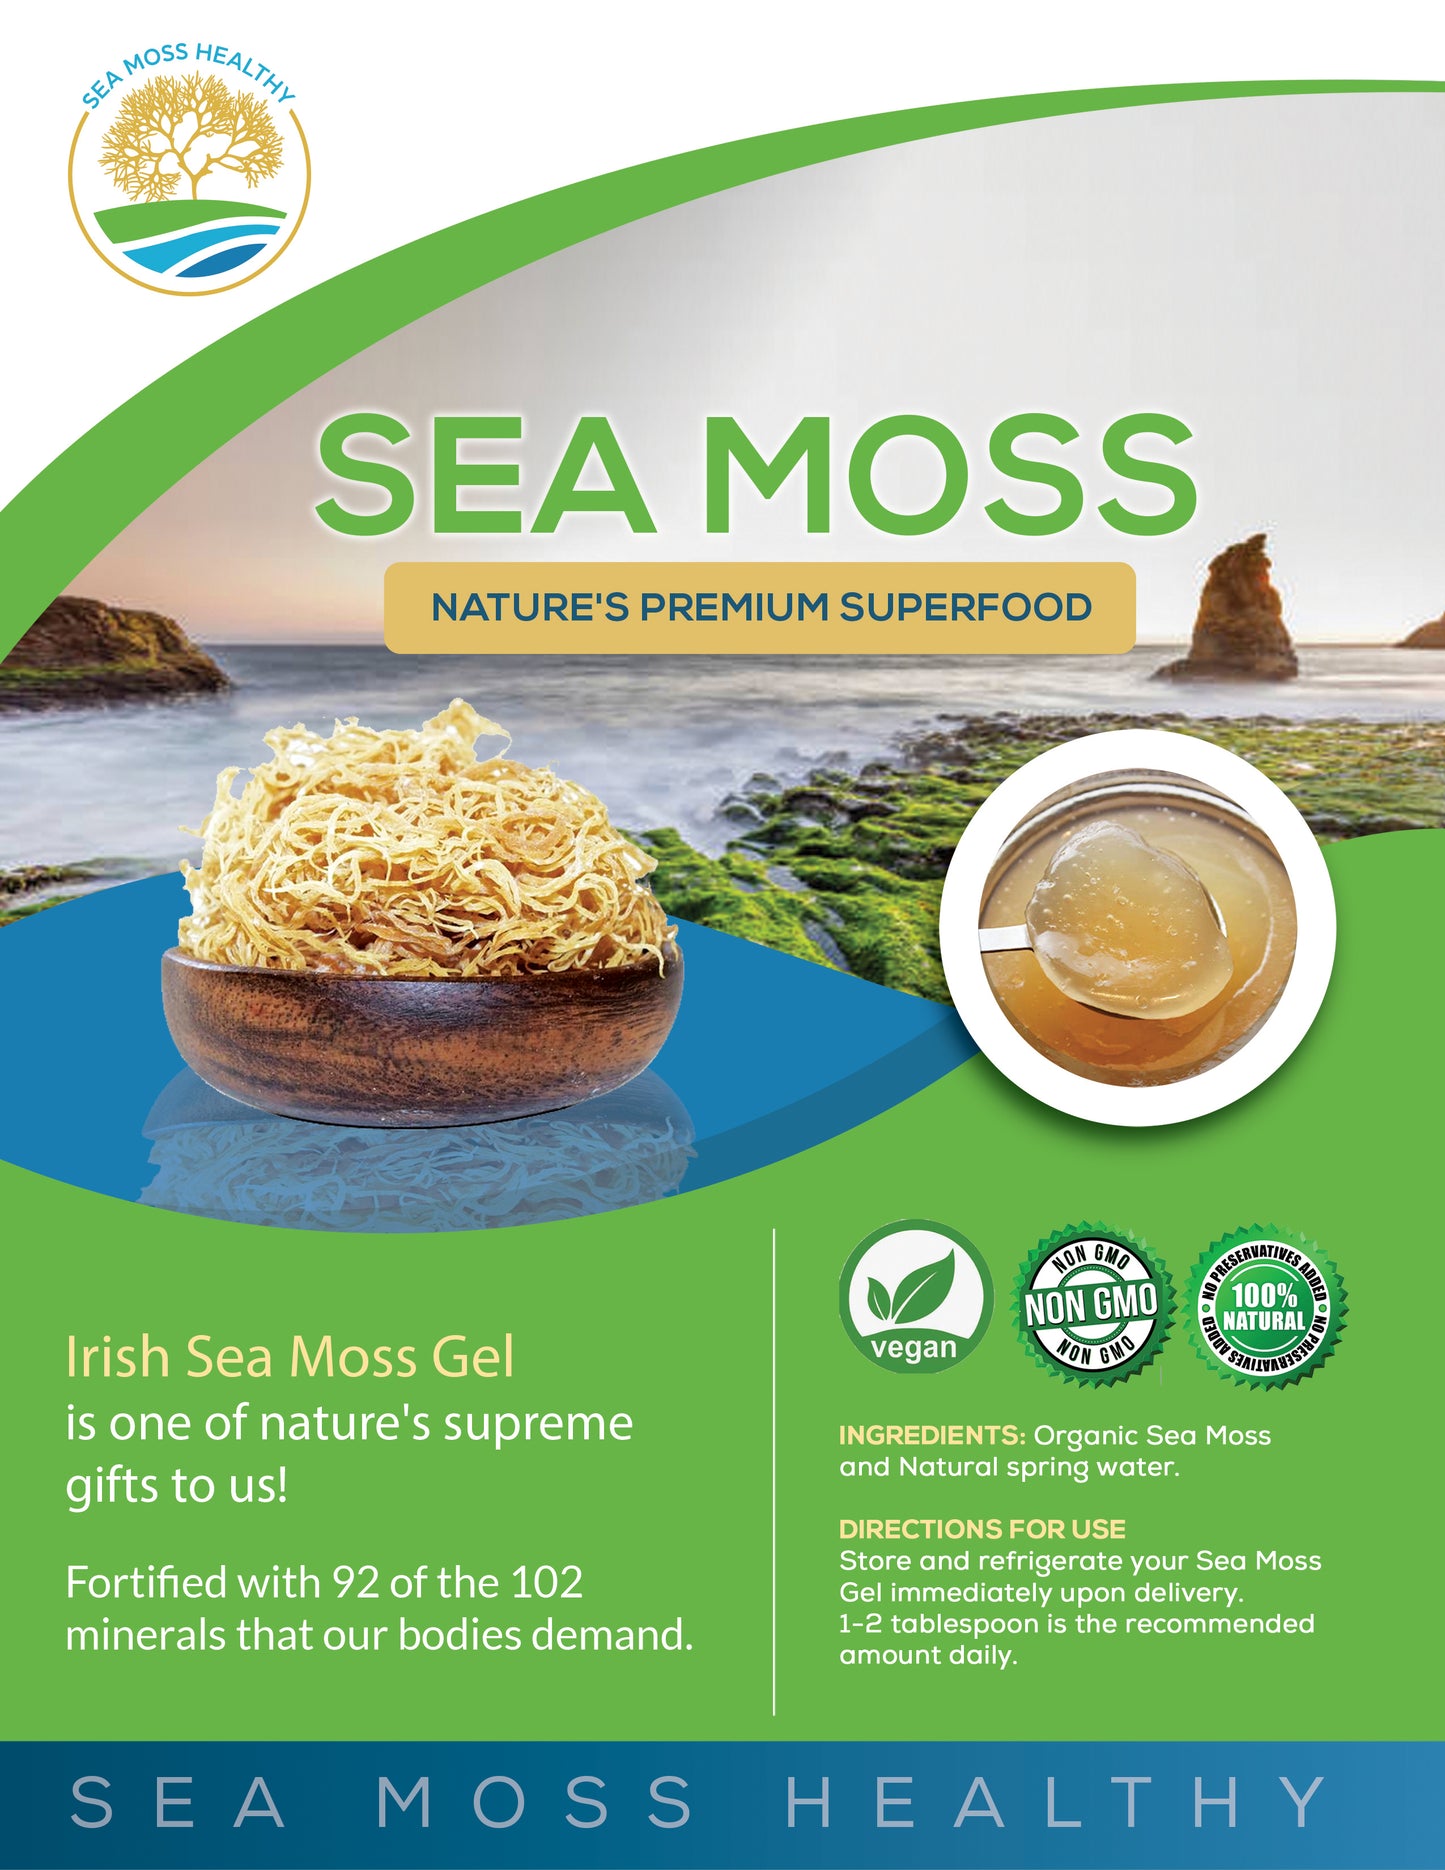 Original Sea Moss Gel